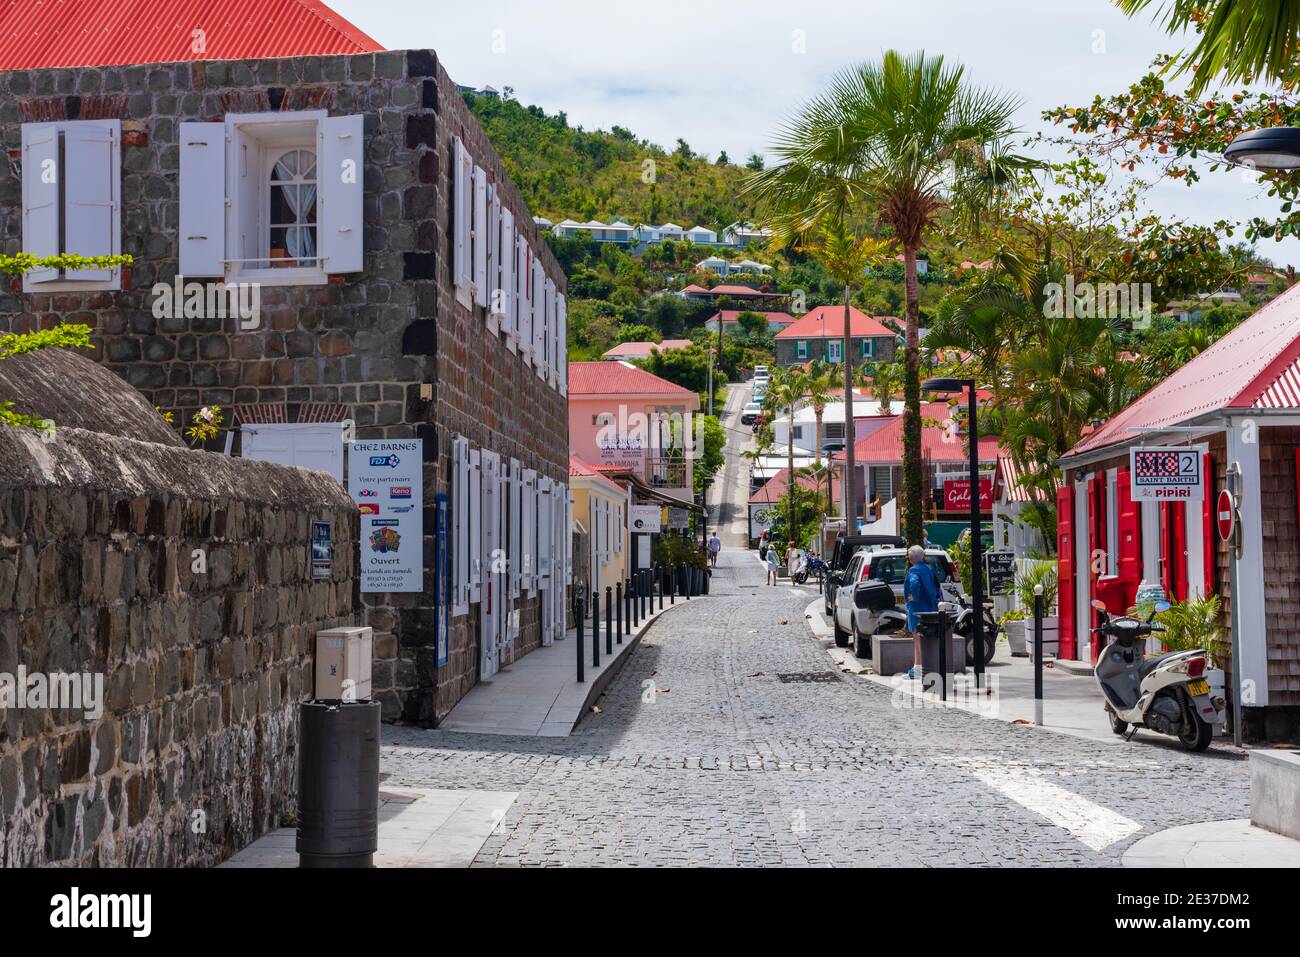 St Barths Gustavia with buildings along main street Rue de la